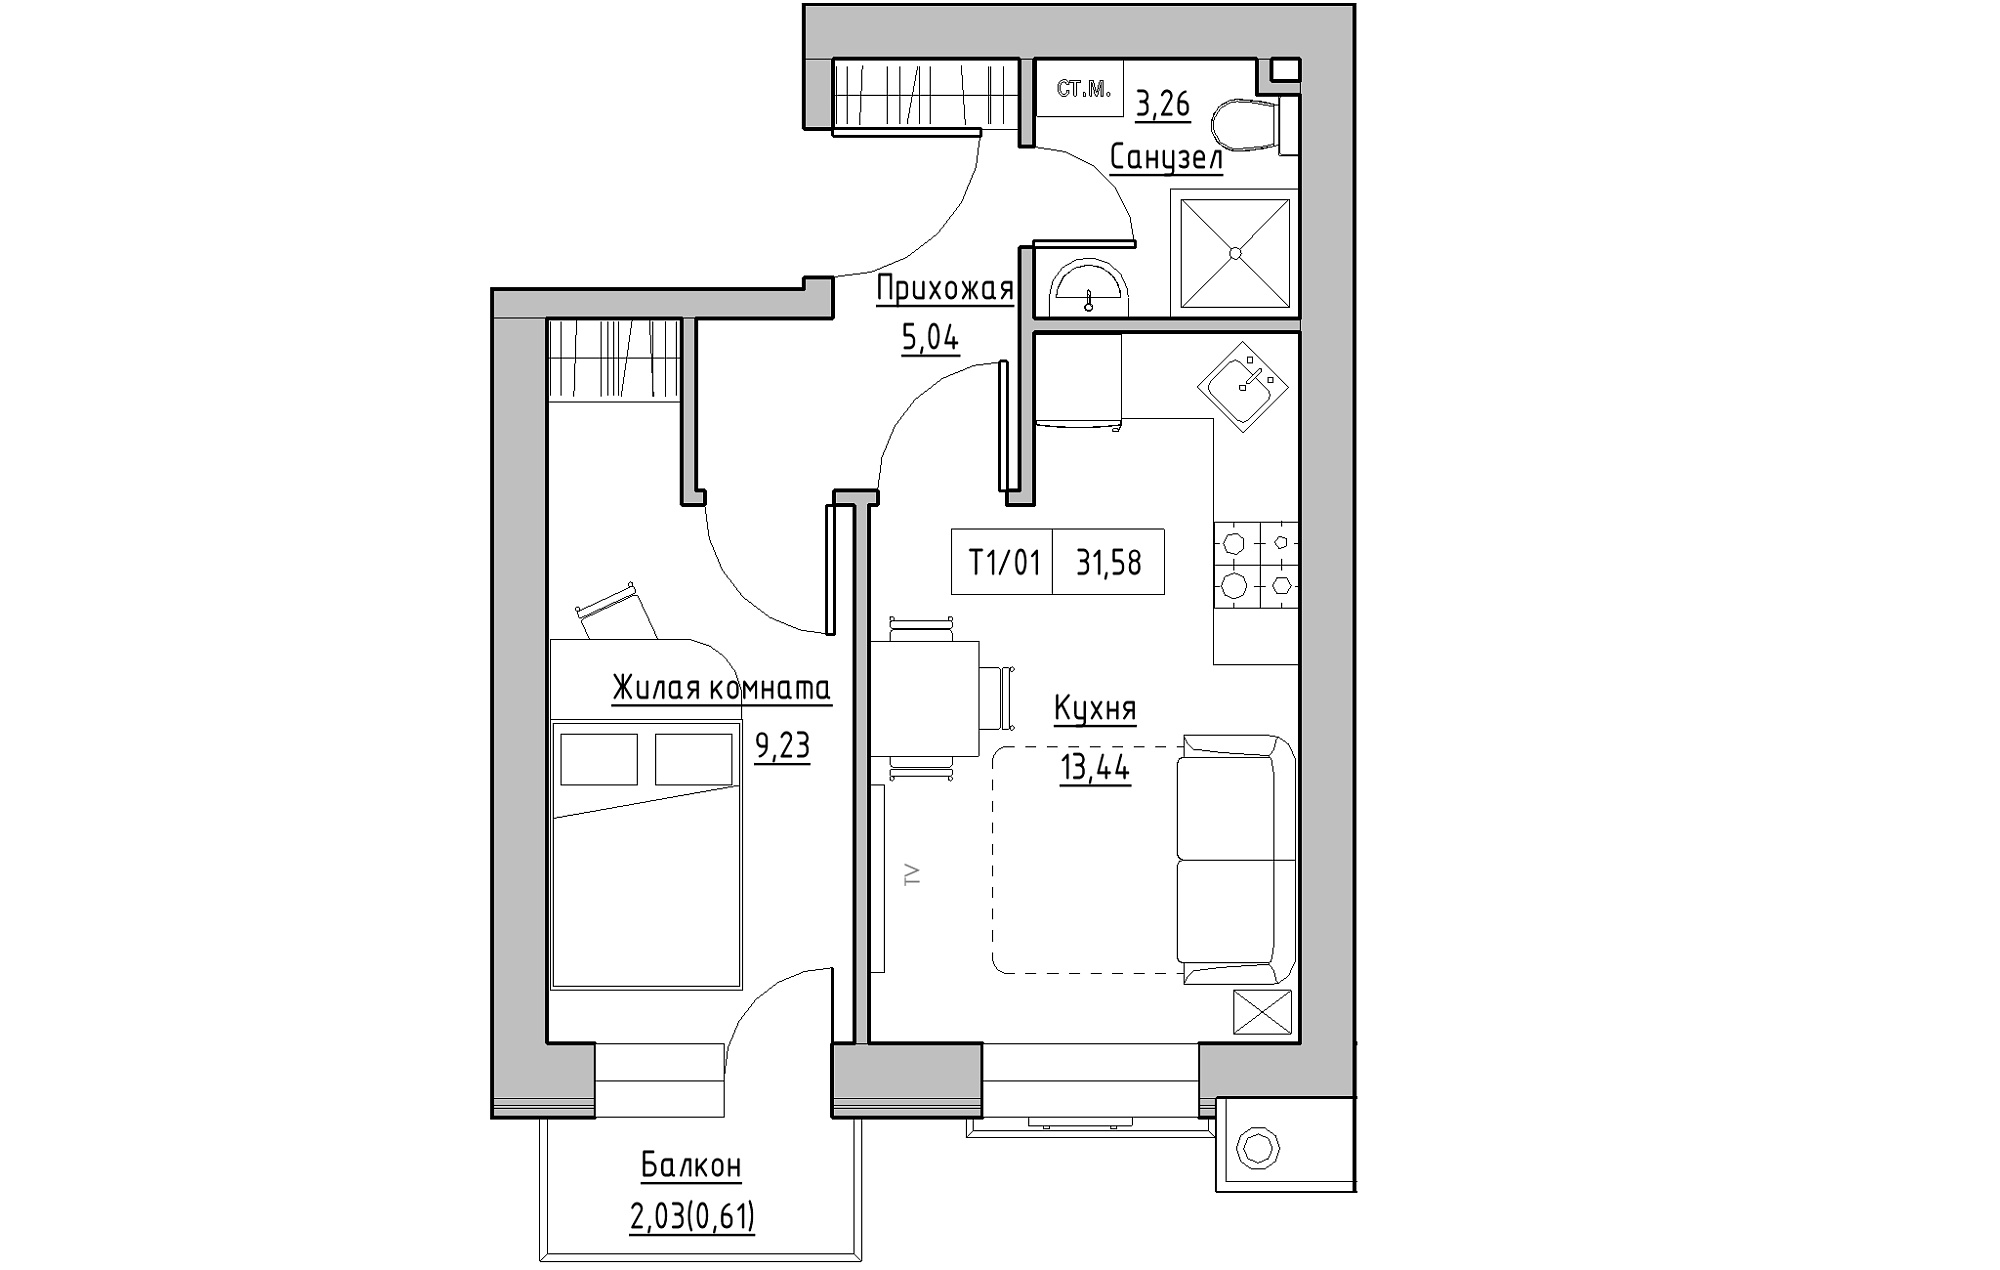 Планировка 1-к квартира площей 31.58м2, KS-013-04/0011.